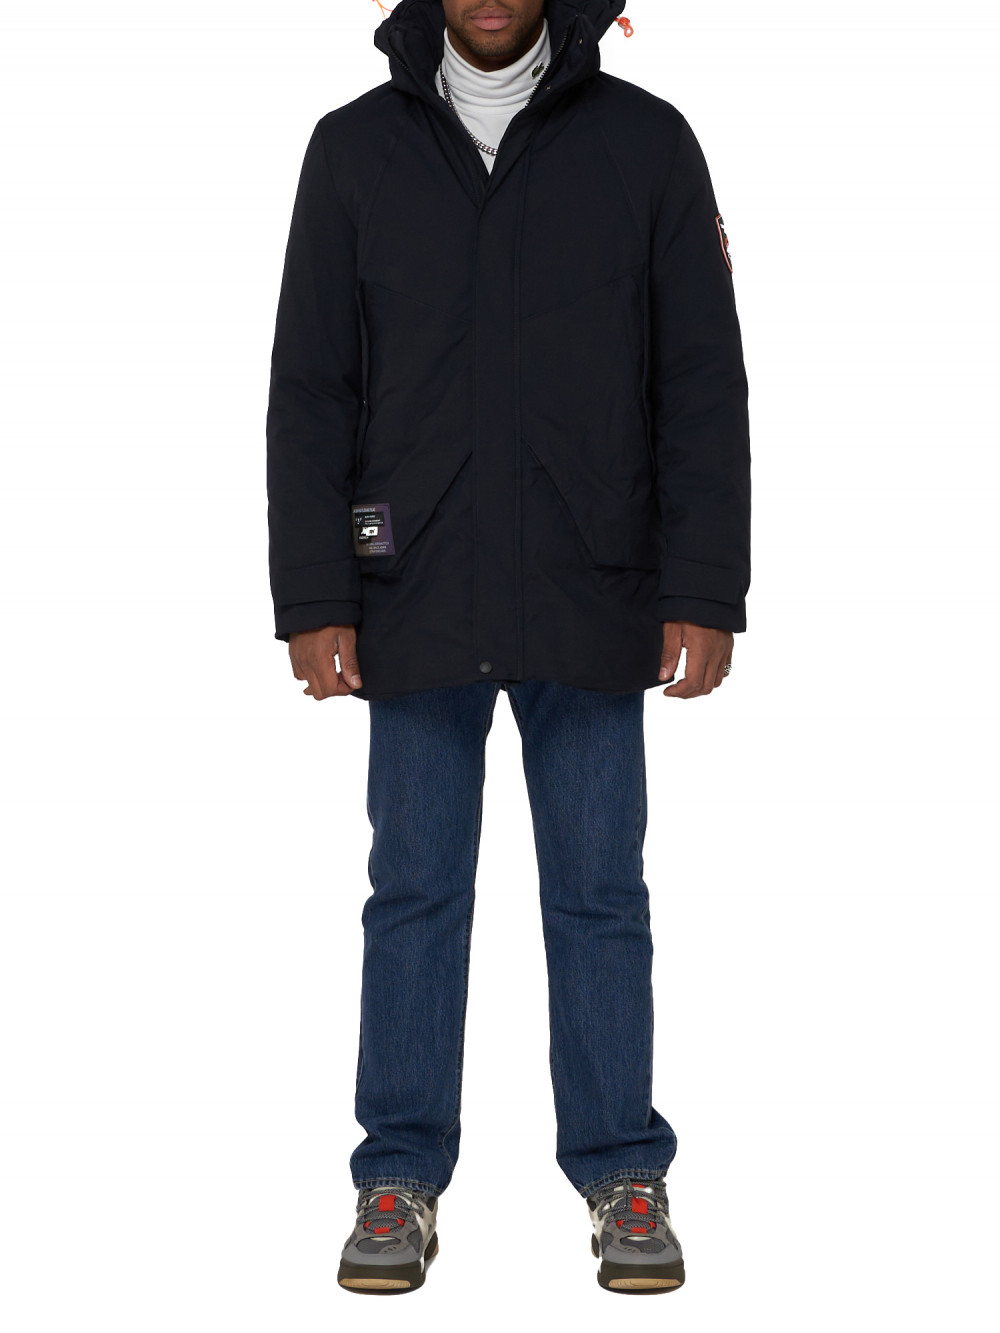 Спортивная куртка мужская NoBrand AD90017 синяя XL